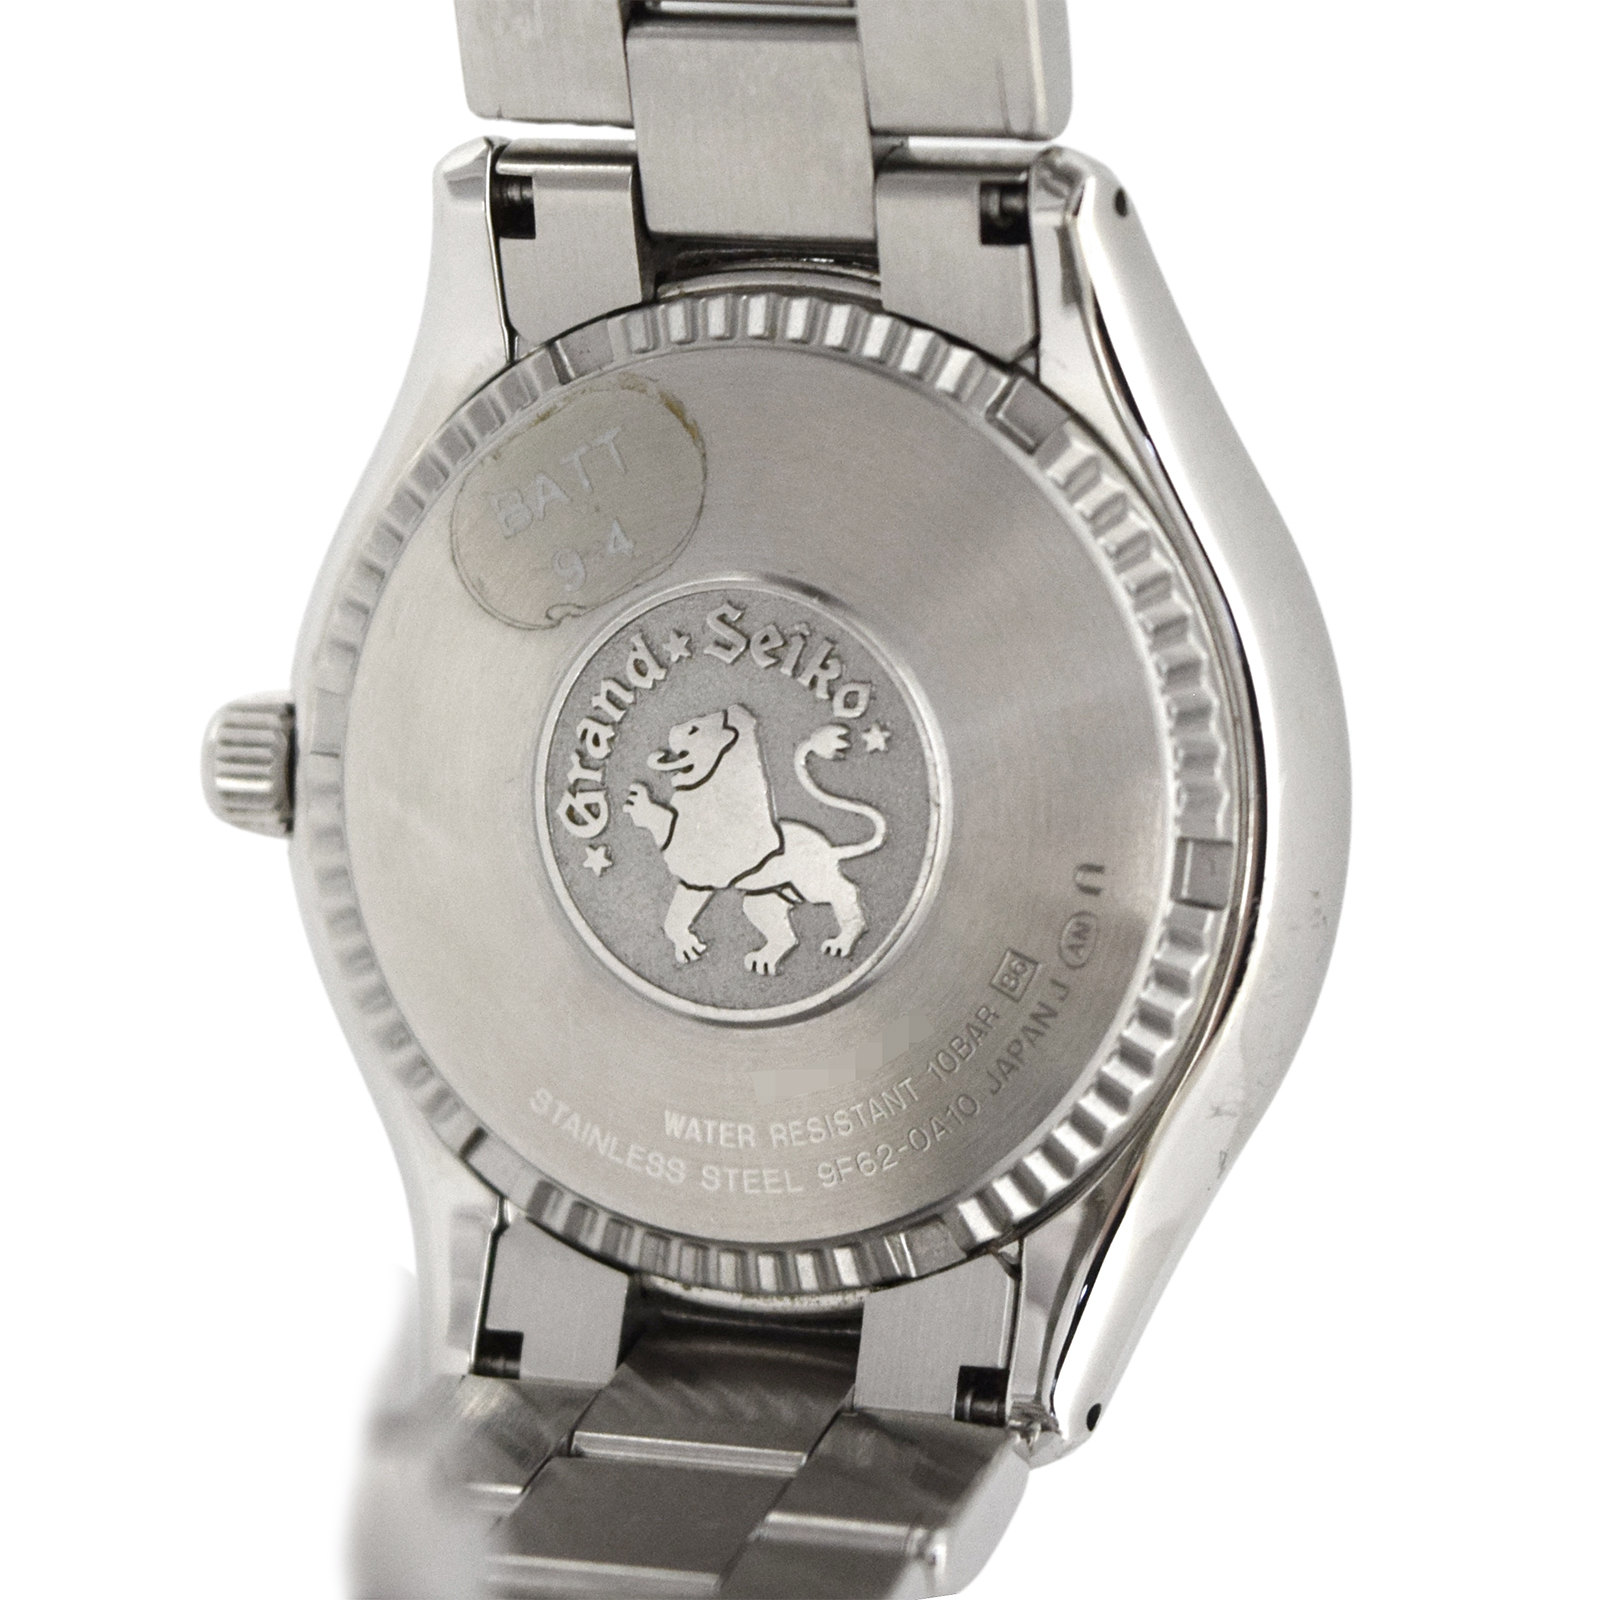 SEIKO セイコー  グランドセイコー  SBGX005 9F62-0A10  メンズ 腕時計